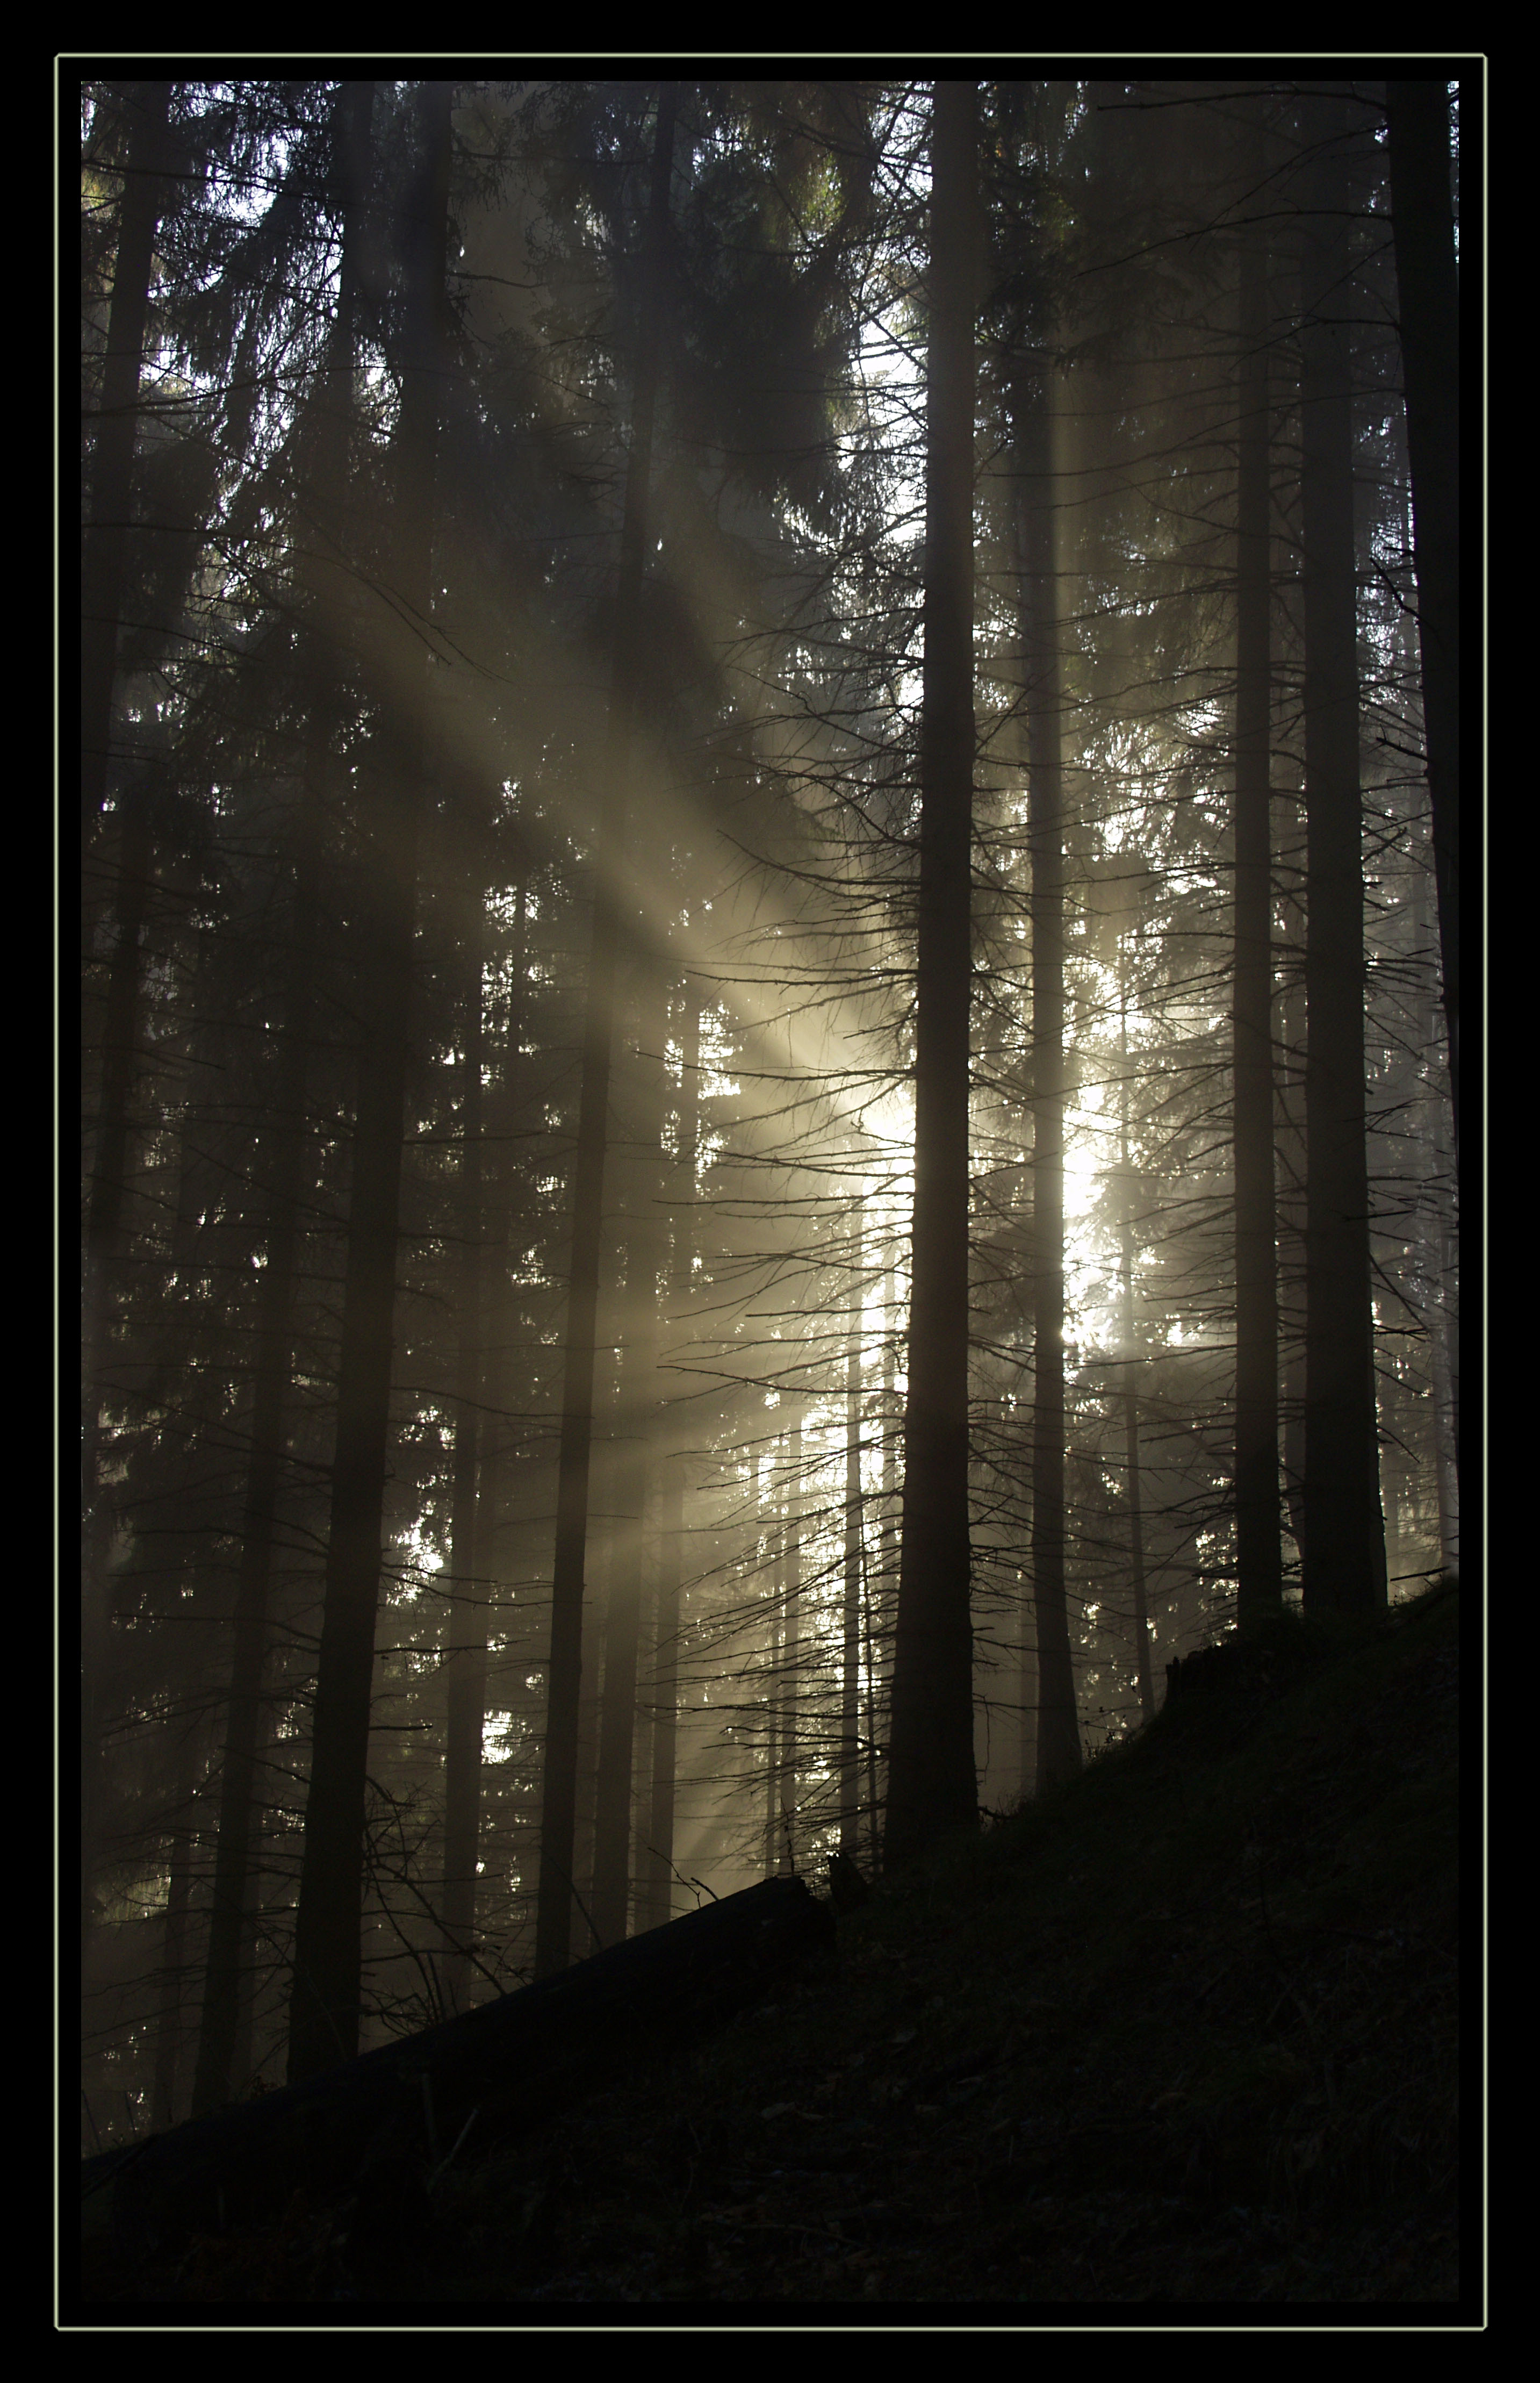 Ráno v lese